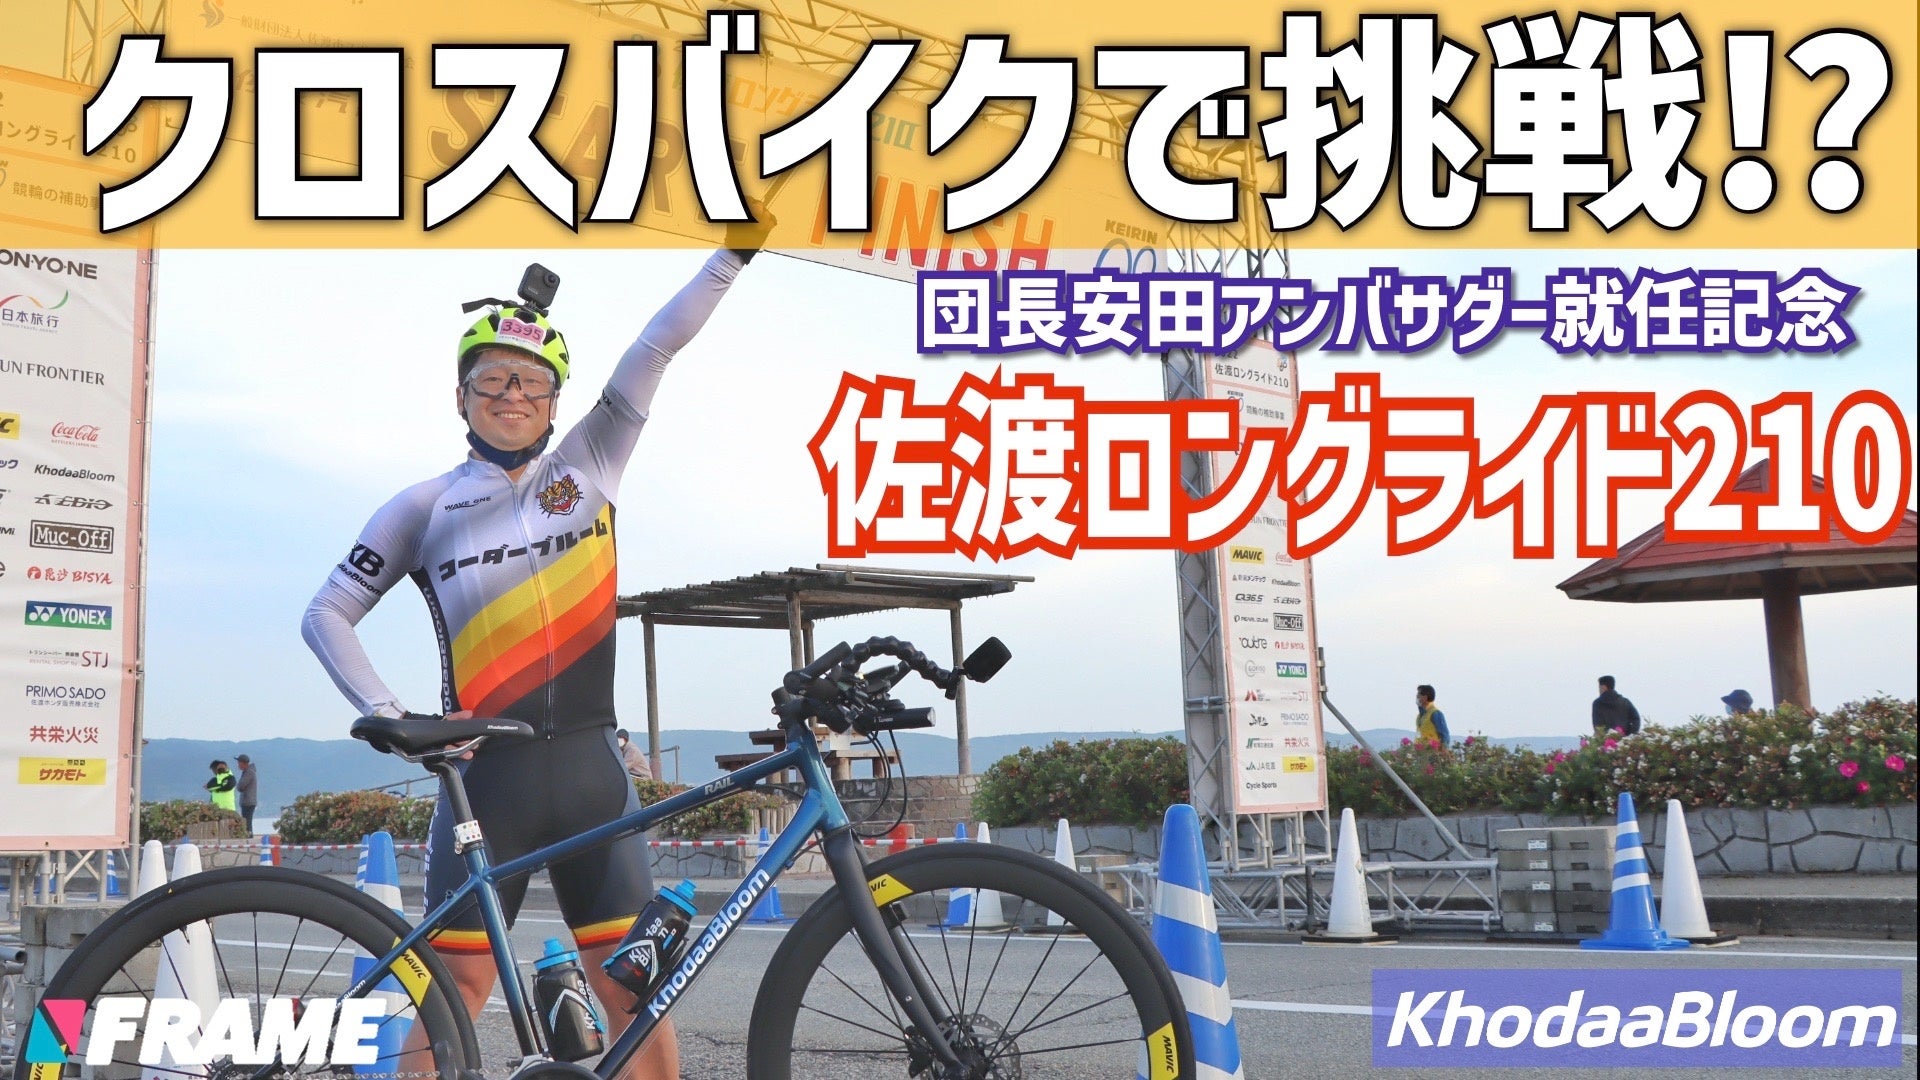 クロスバイクで210km！？自転車芸人 安田大サーカス 団長安田が佐渡島1周でクロスバイクの極限に挑戦！